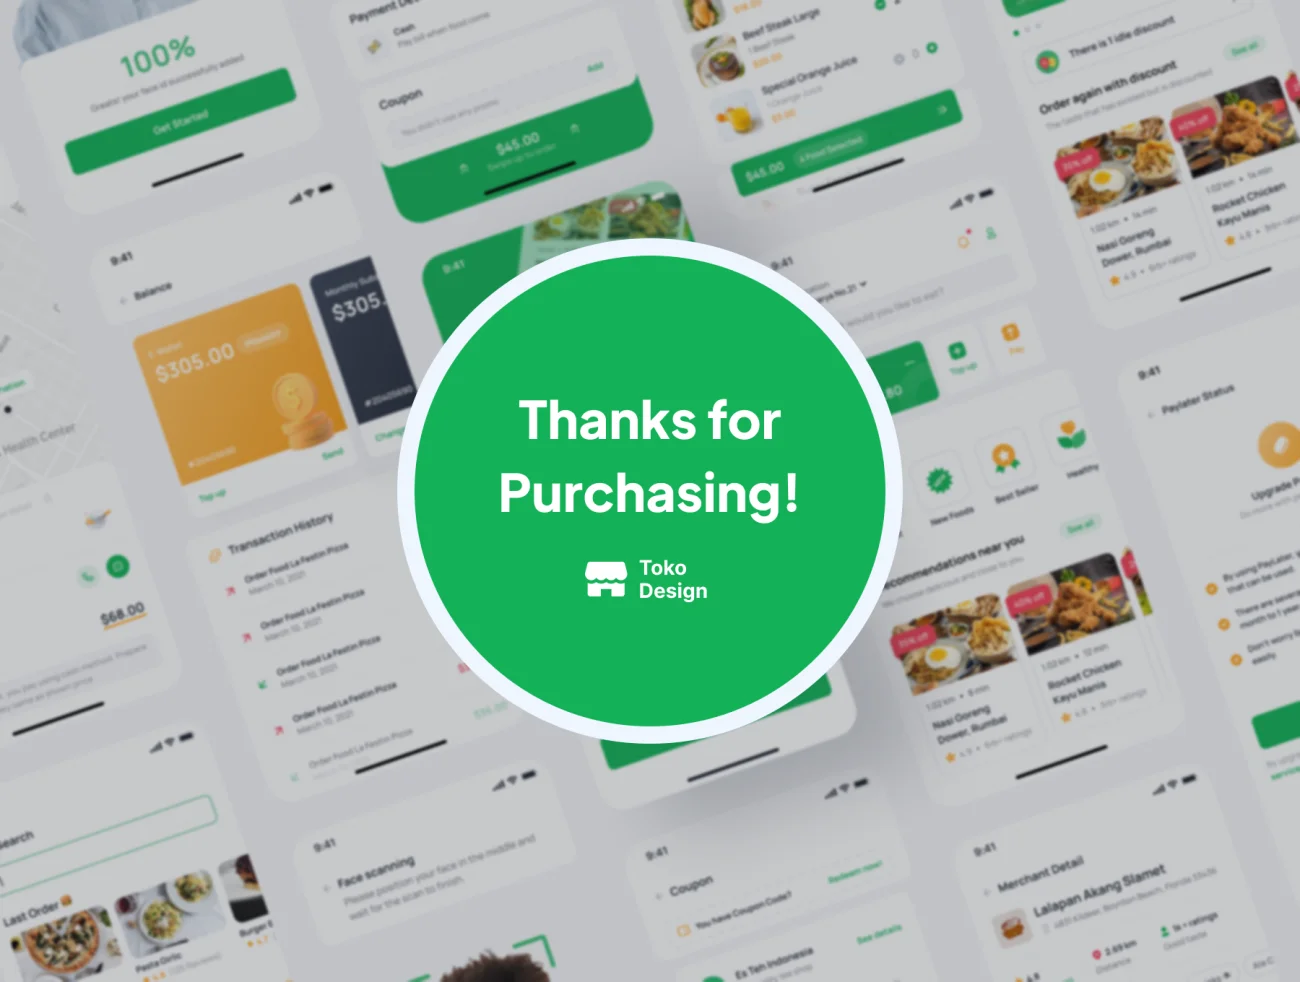 120屏外卖点餐配送应用UI设计套件 Foodies – Food Delivery App UI Kit .figma插图11